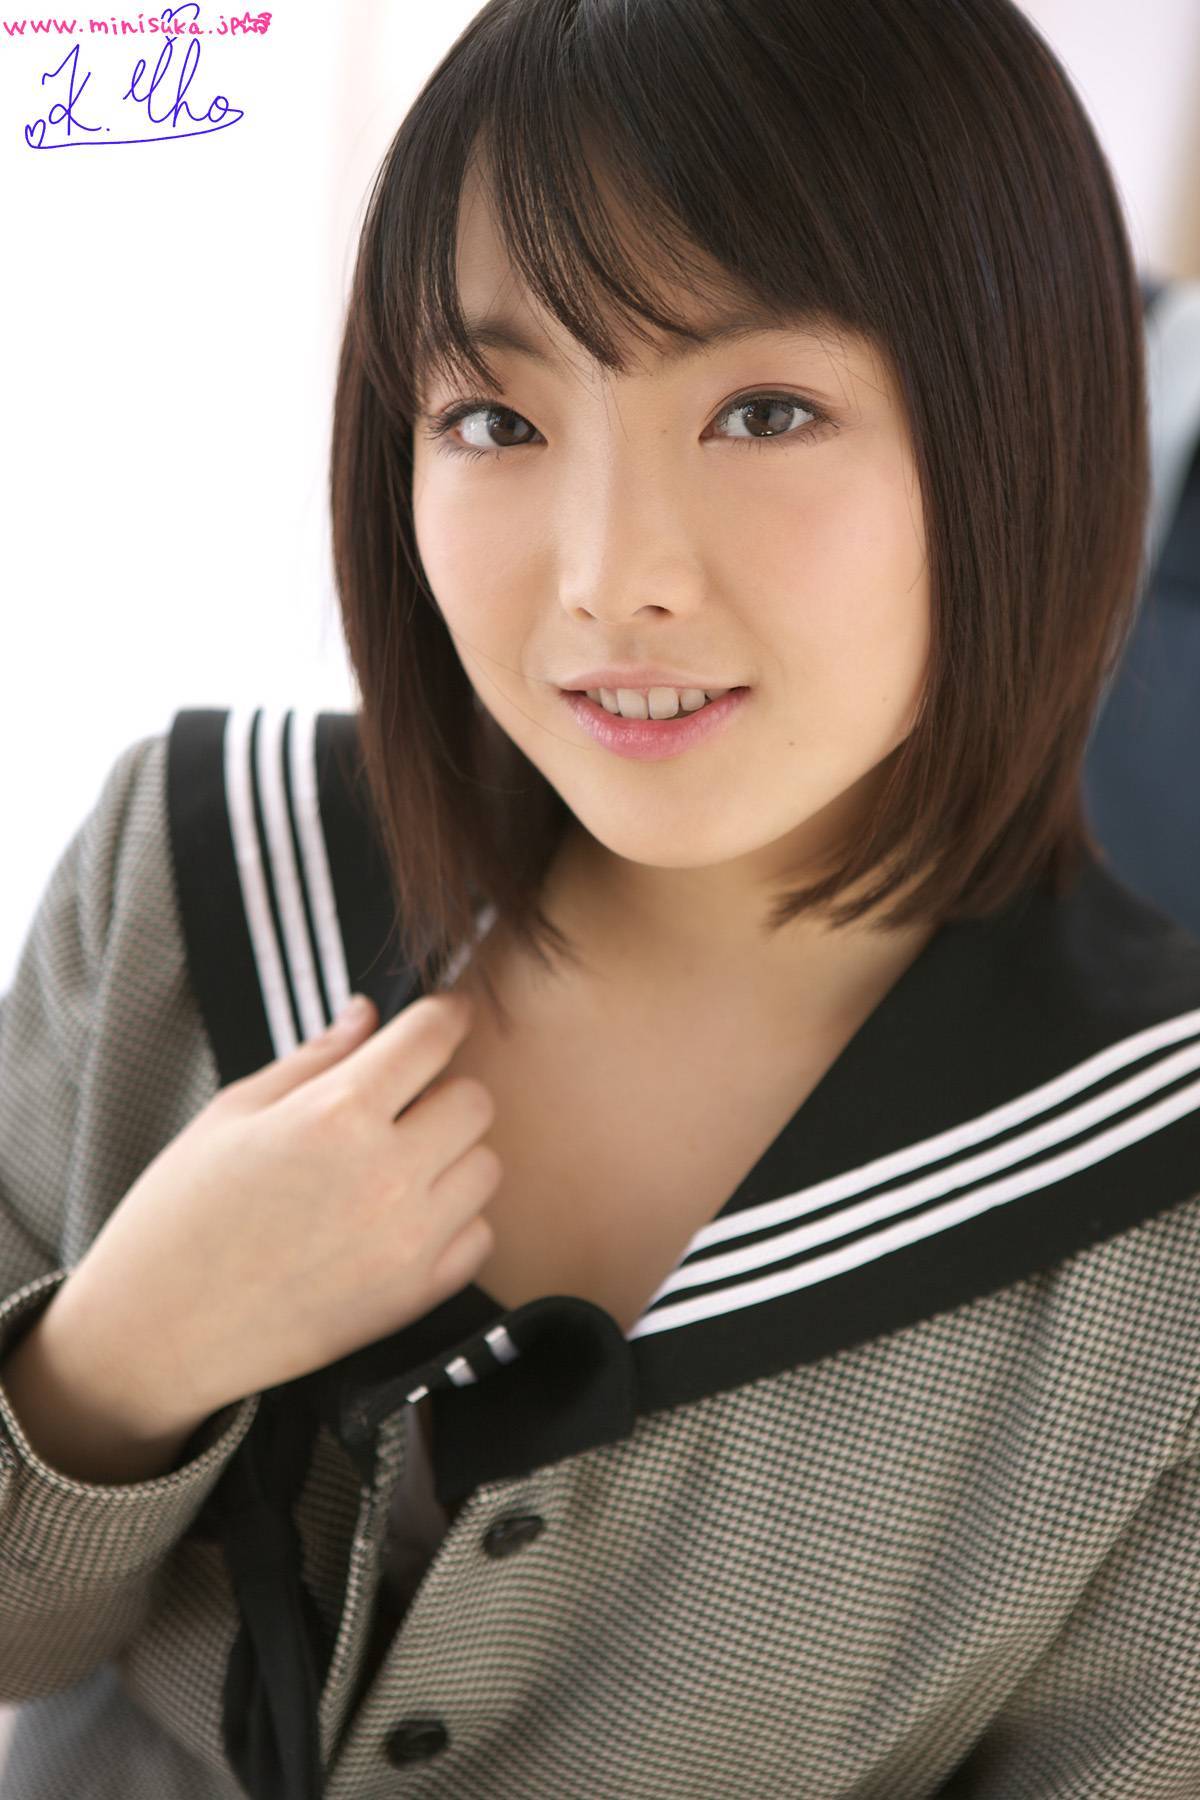 RIHO Kayama 02 Minisuka. TV Women's high school girl